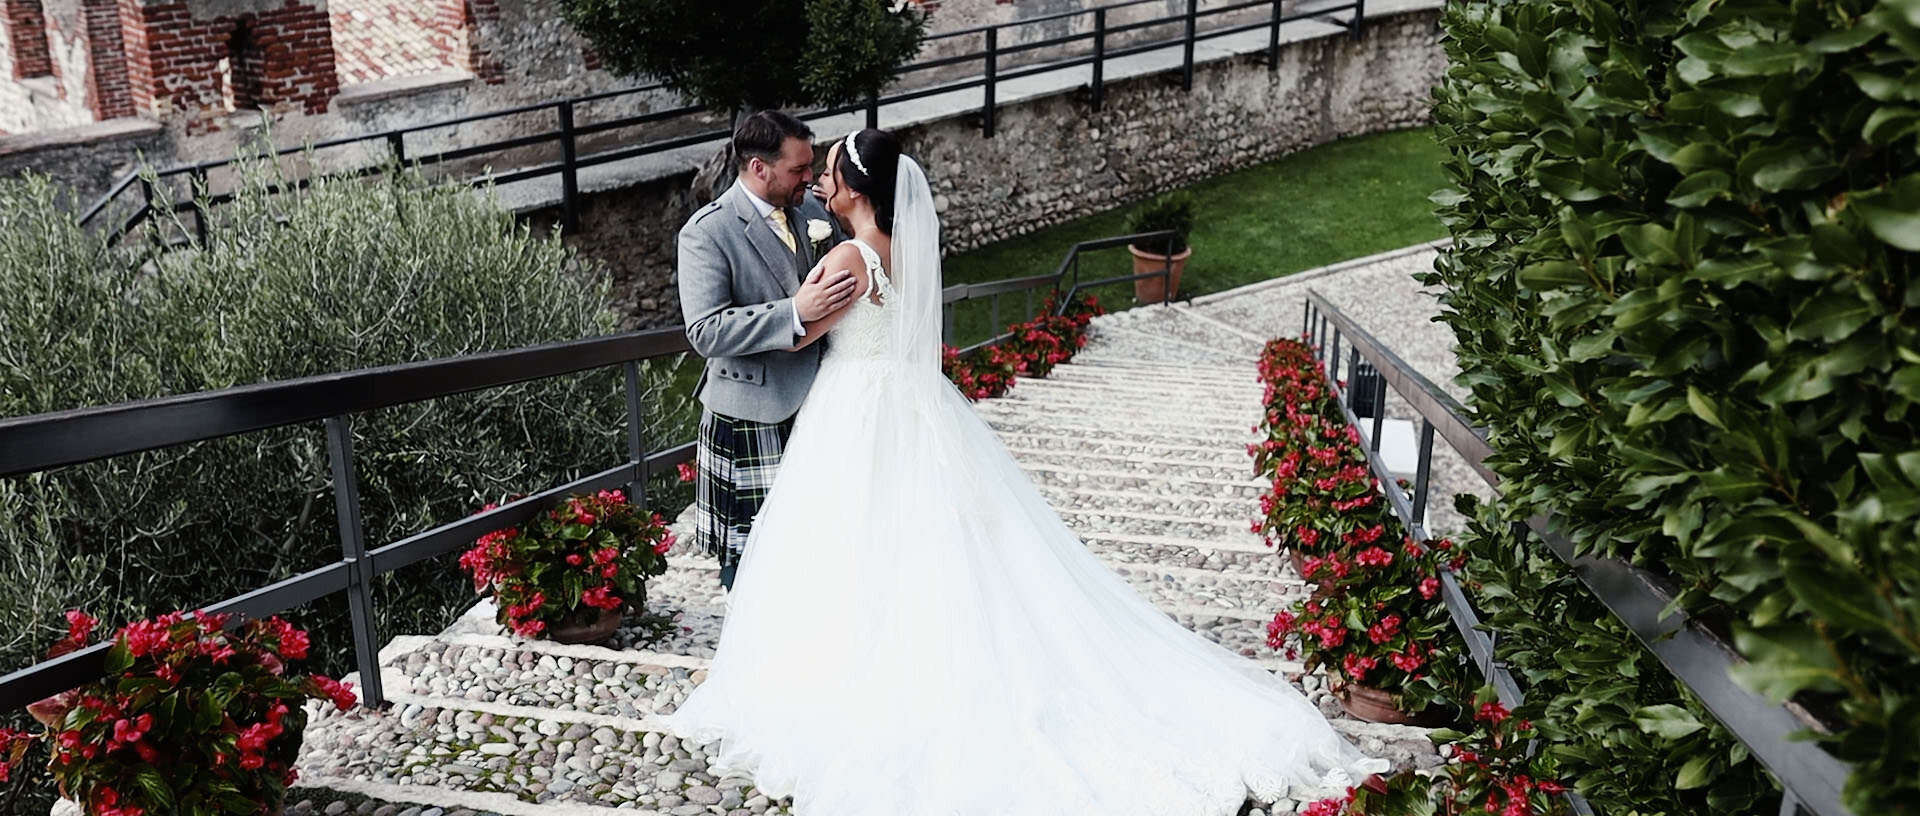 Elisa & Gavin Destination Wedding Film Lake Garda Malcesine 16.jpg